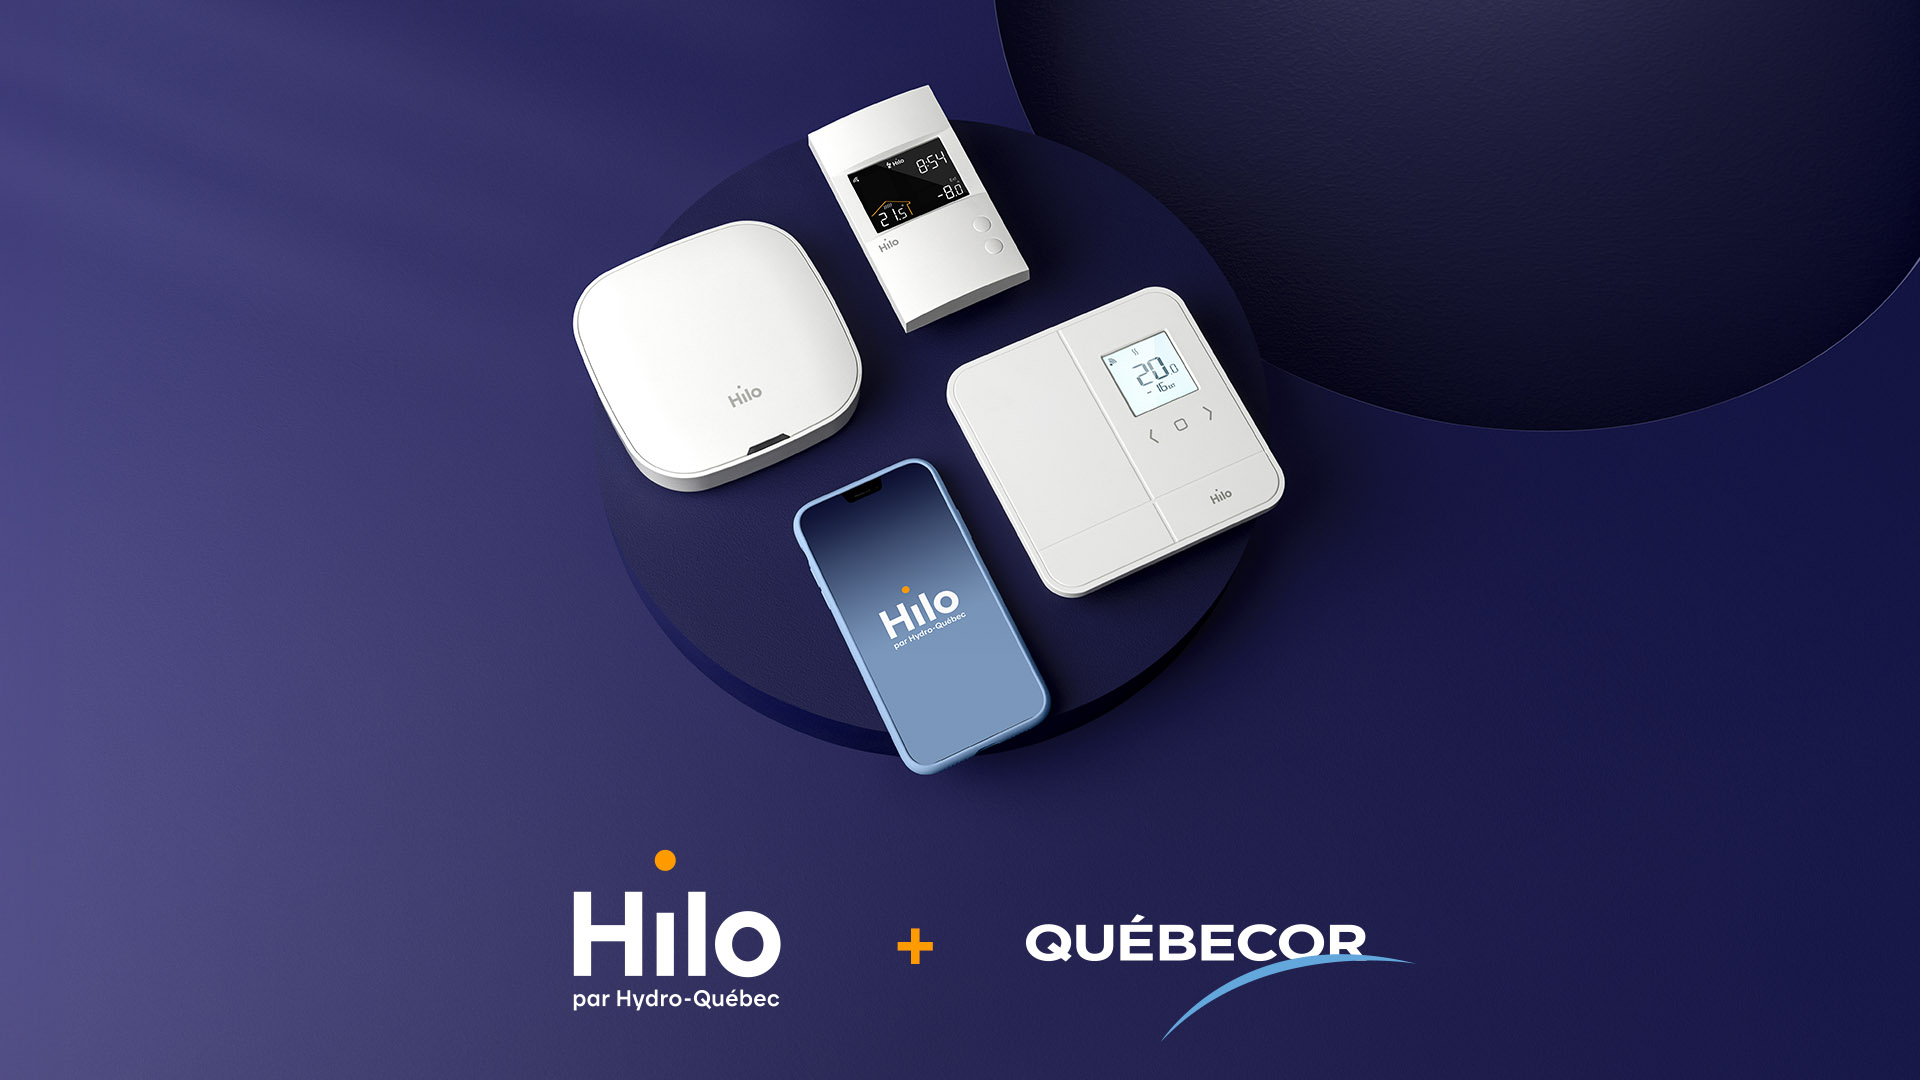 Hilo et Québecor : un partenariat pour mieux consommer l’électricité